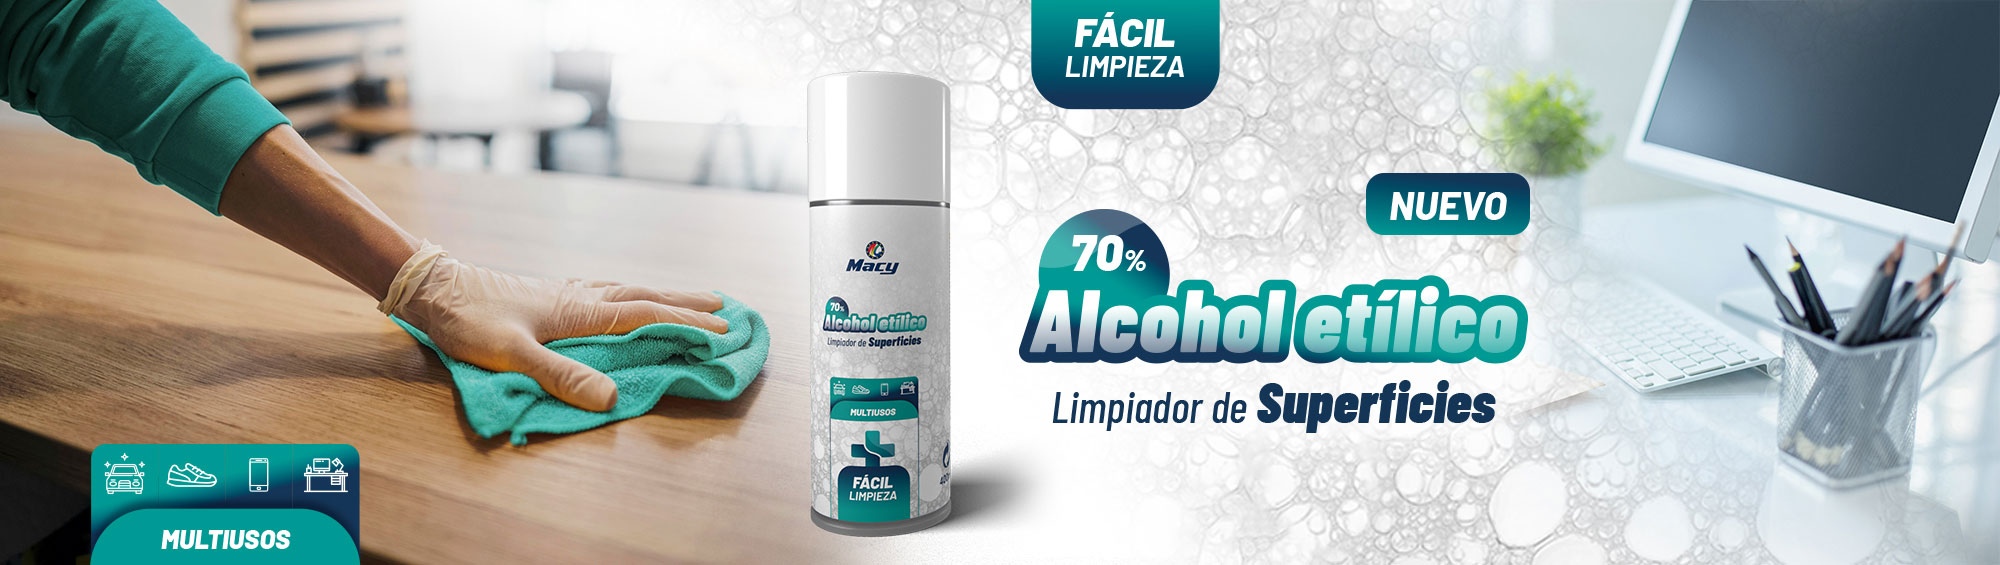 LIMPIADOR DE SUPERFICIES ALCOHOL ETÍLICO 70%